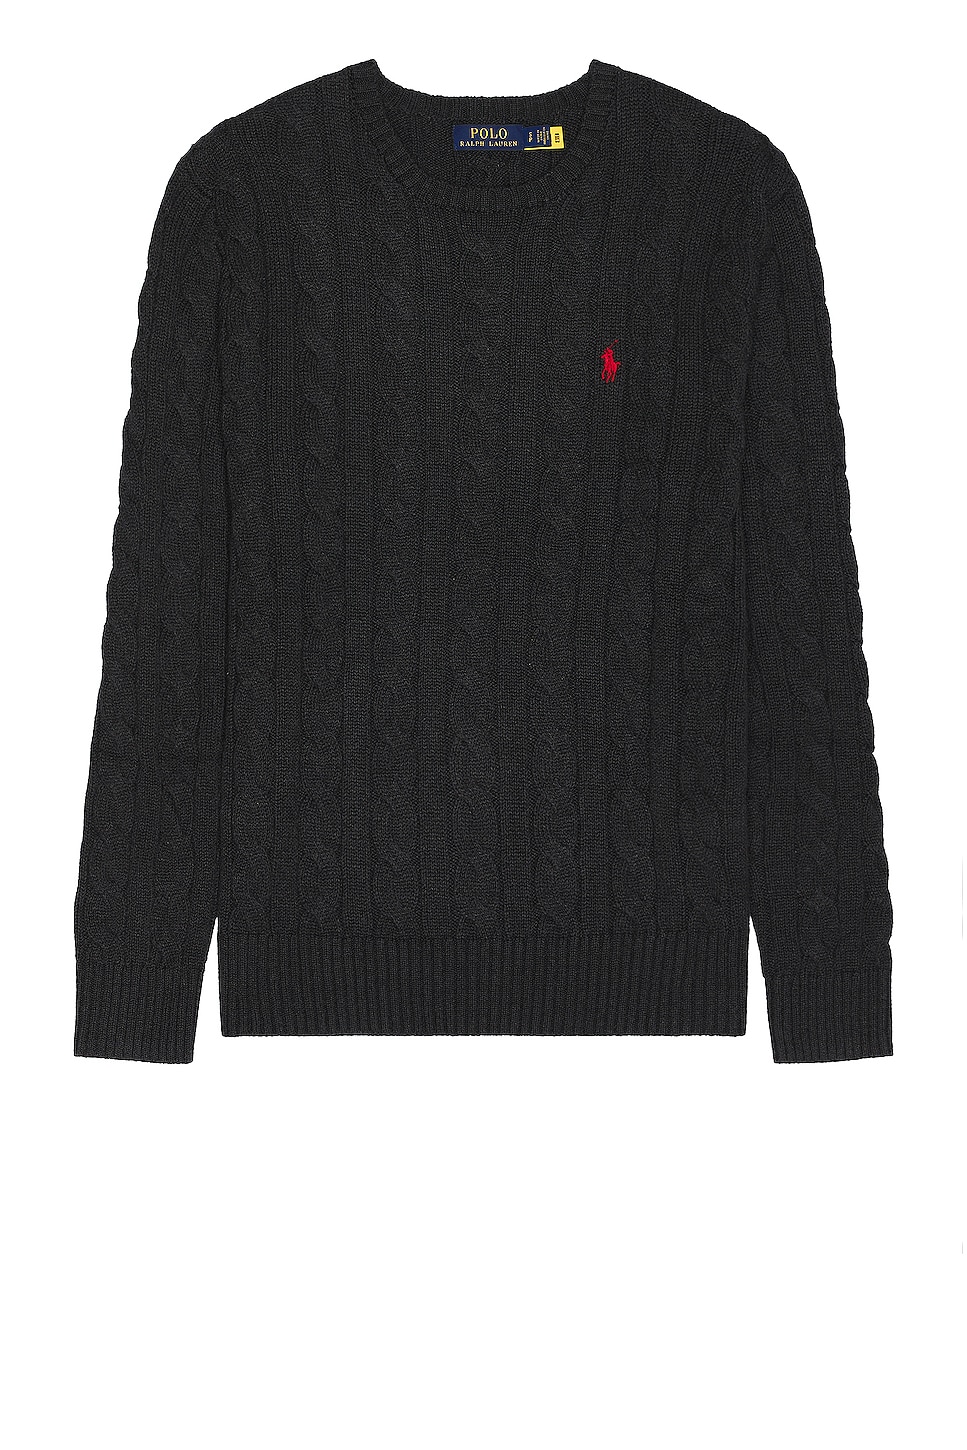 Image 1 of Polo Ralph Lauren Sweater in Dark Granite Heather